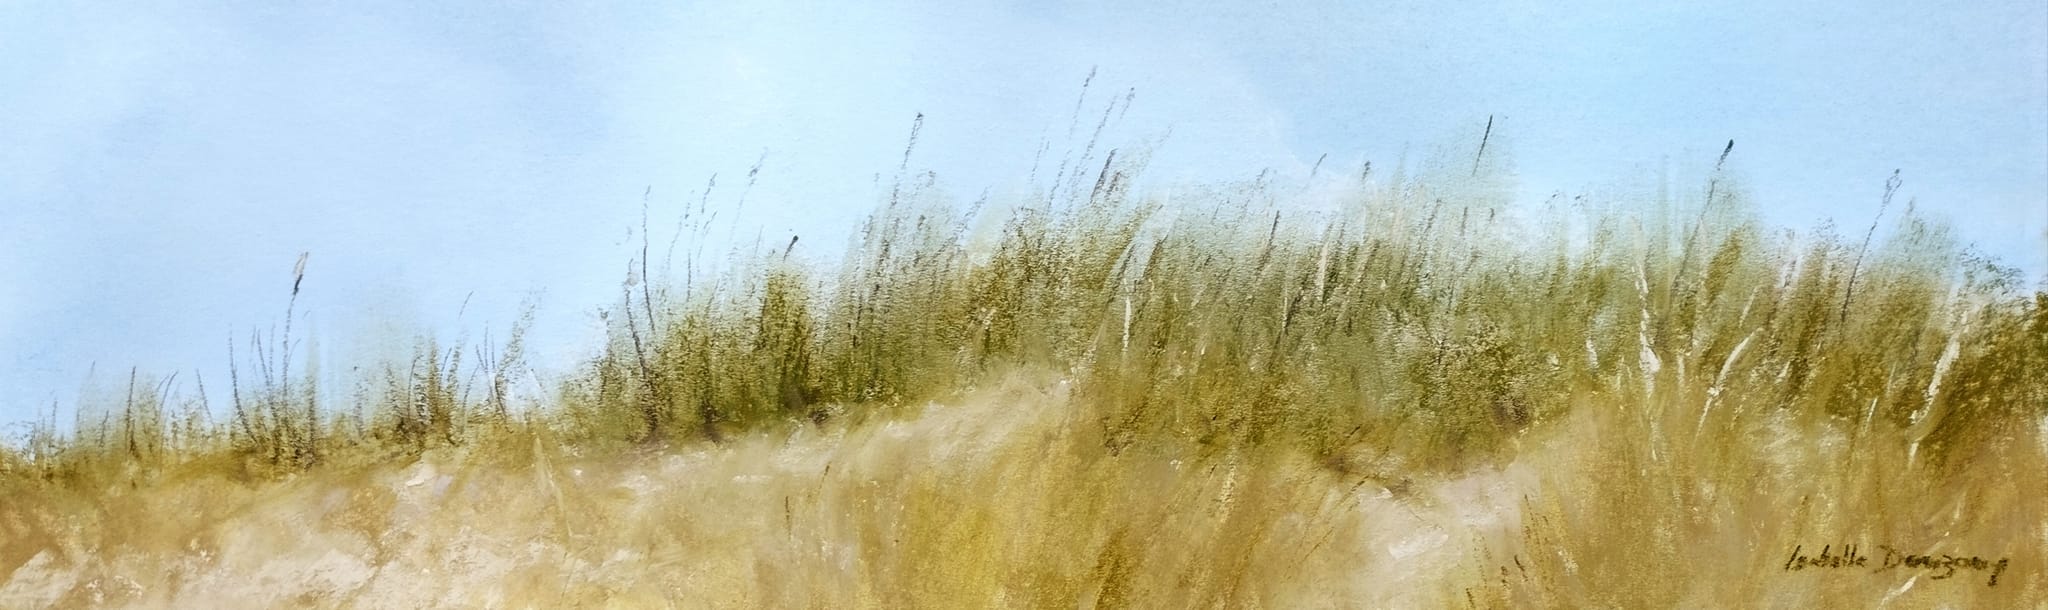 Herbes folles dans les dunes à Saint-Cast-Le-Guildo - peinture au pastel sec par l'artiste peintre Isabelle Douzamy - format panoramique 35 x 95 cm (encadré)